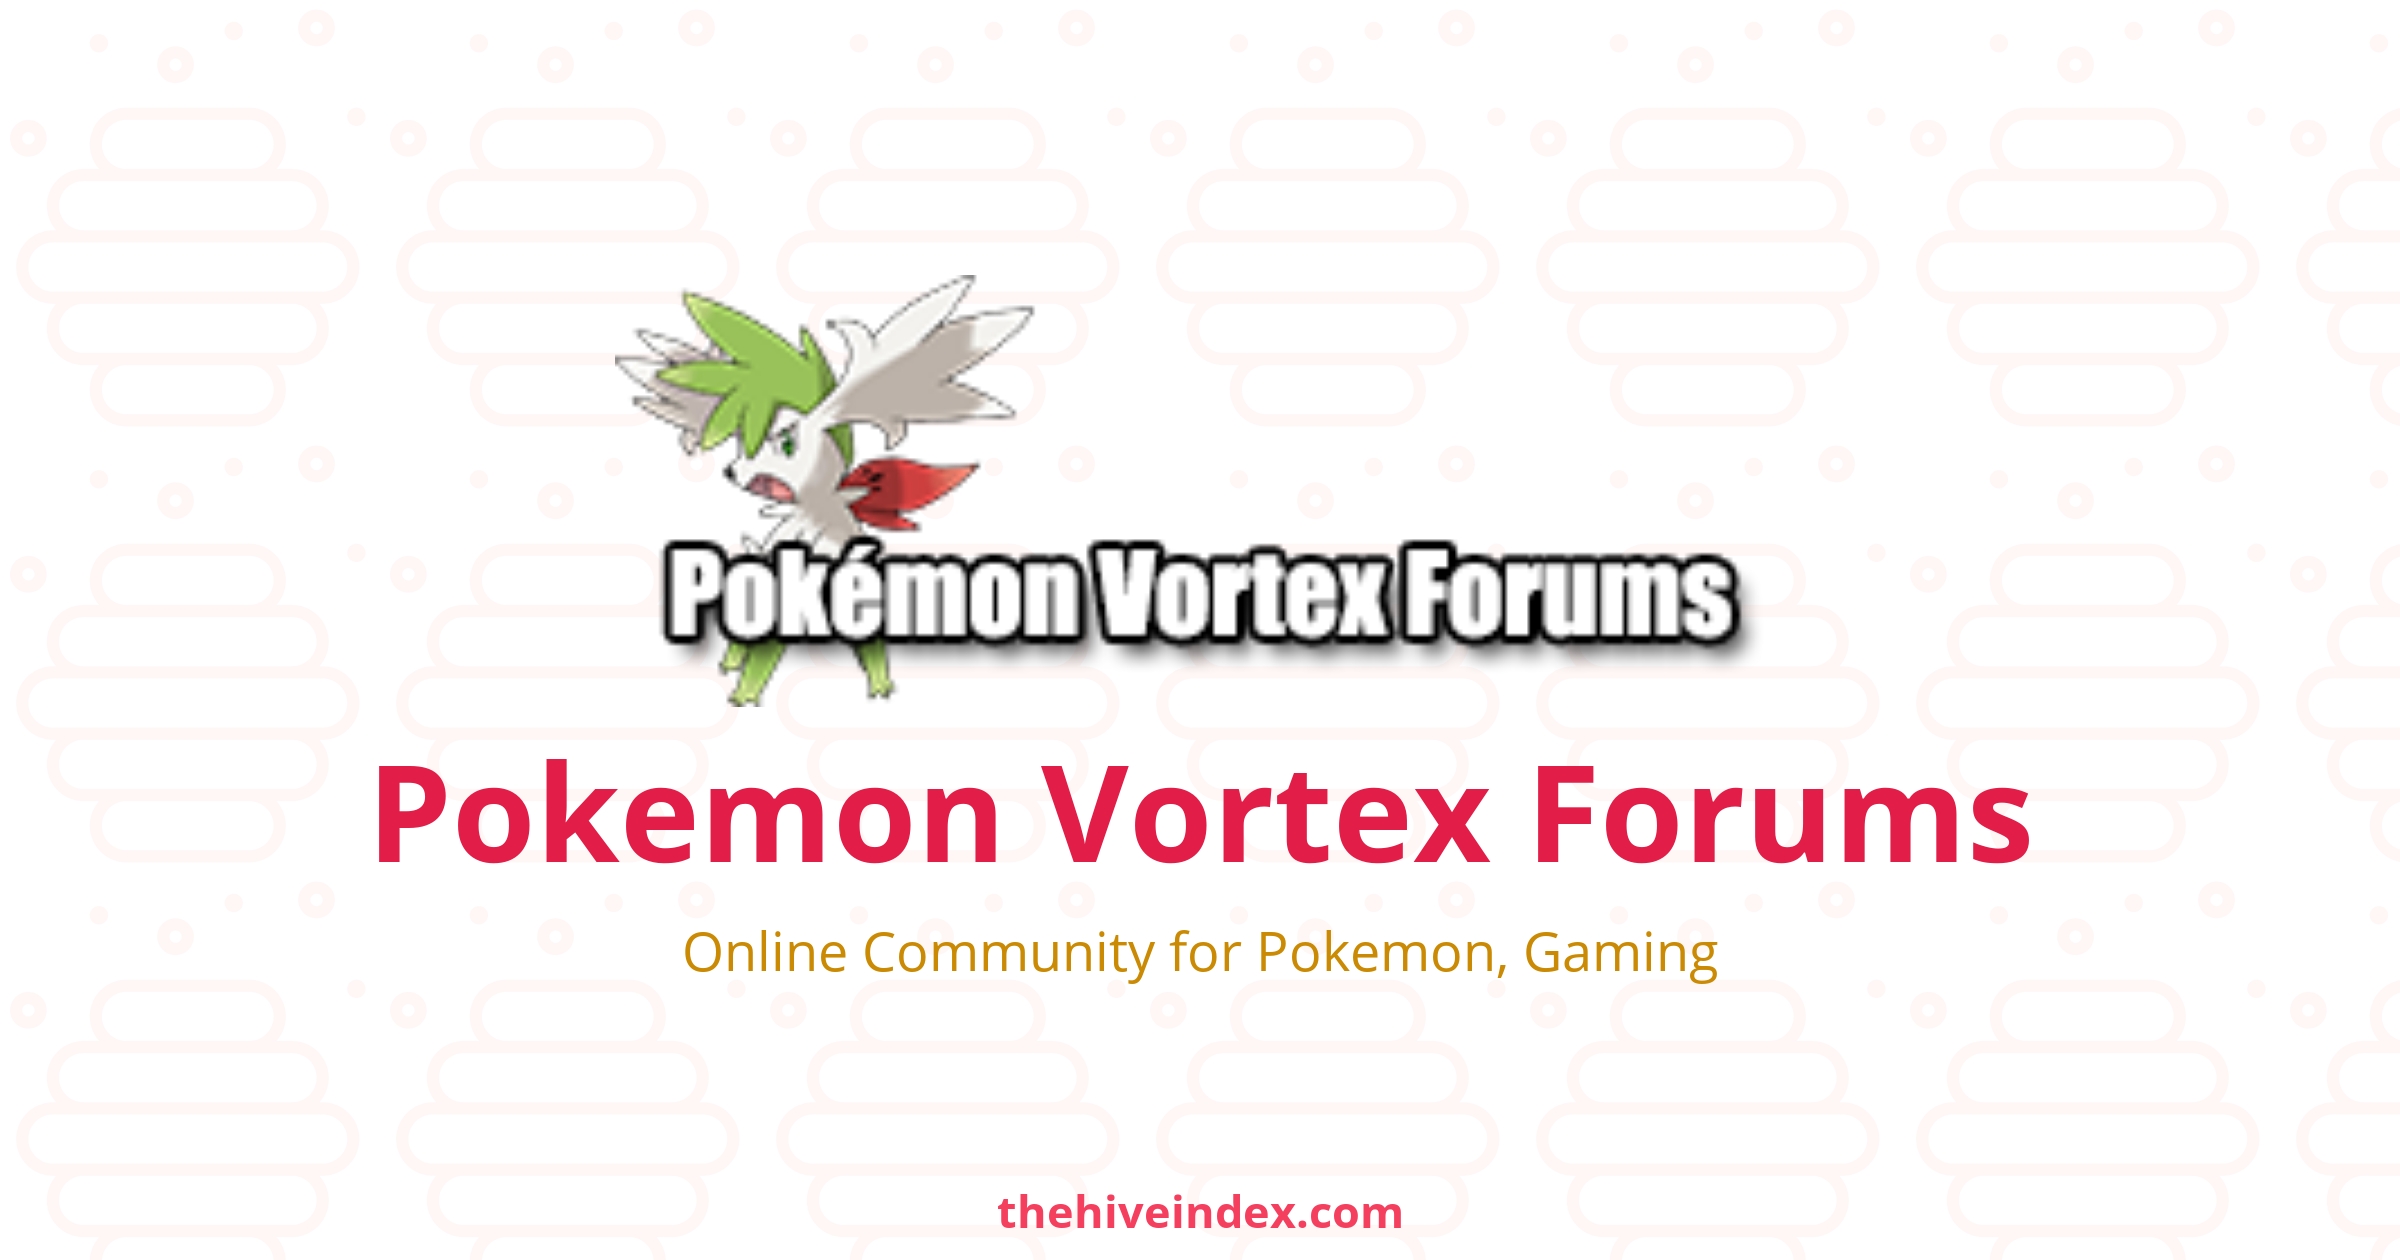 Pokemon Vortex Forums - Online Community for Pokemon, Gaming